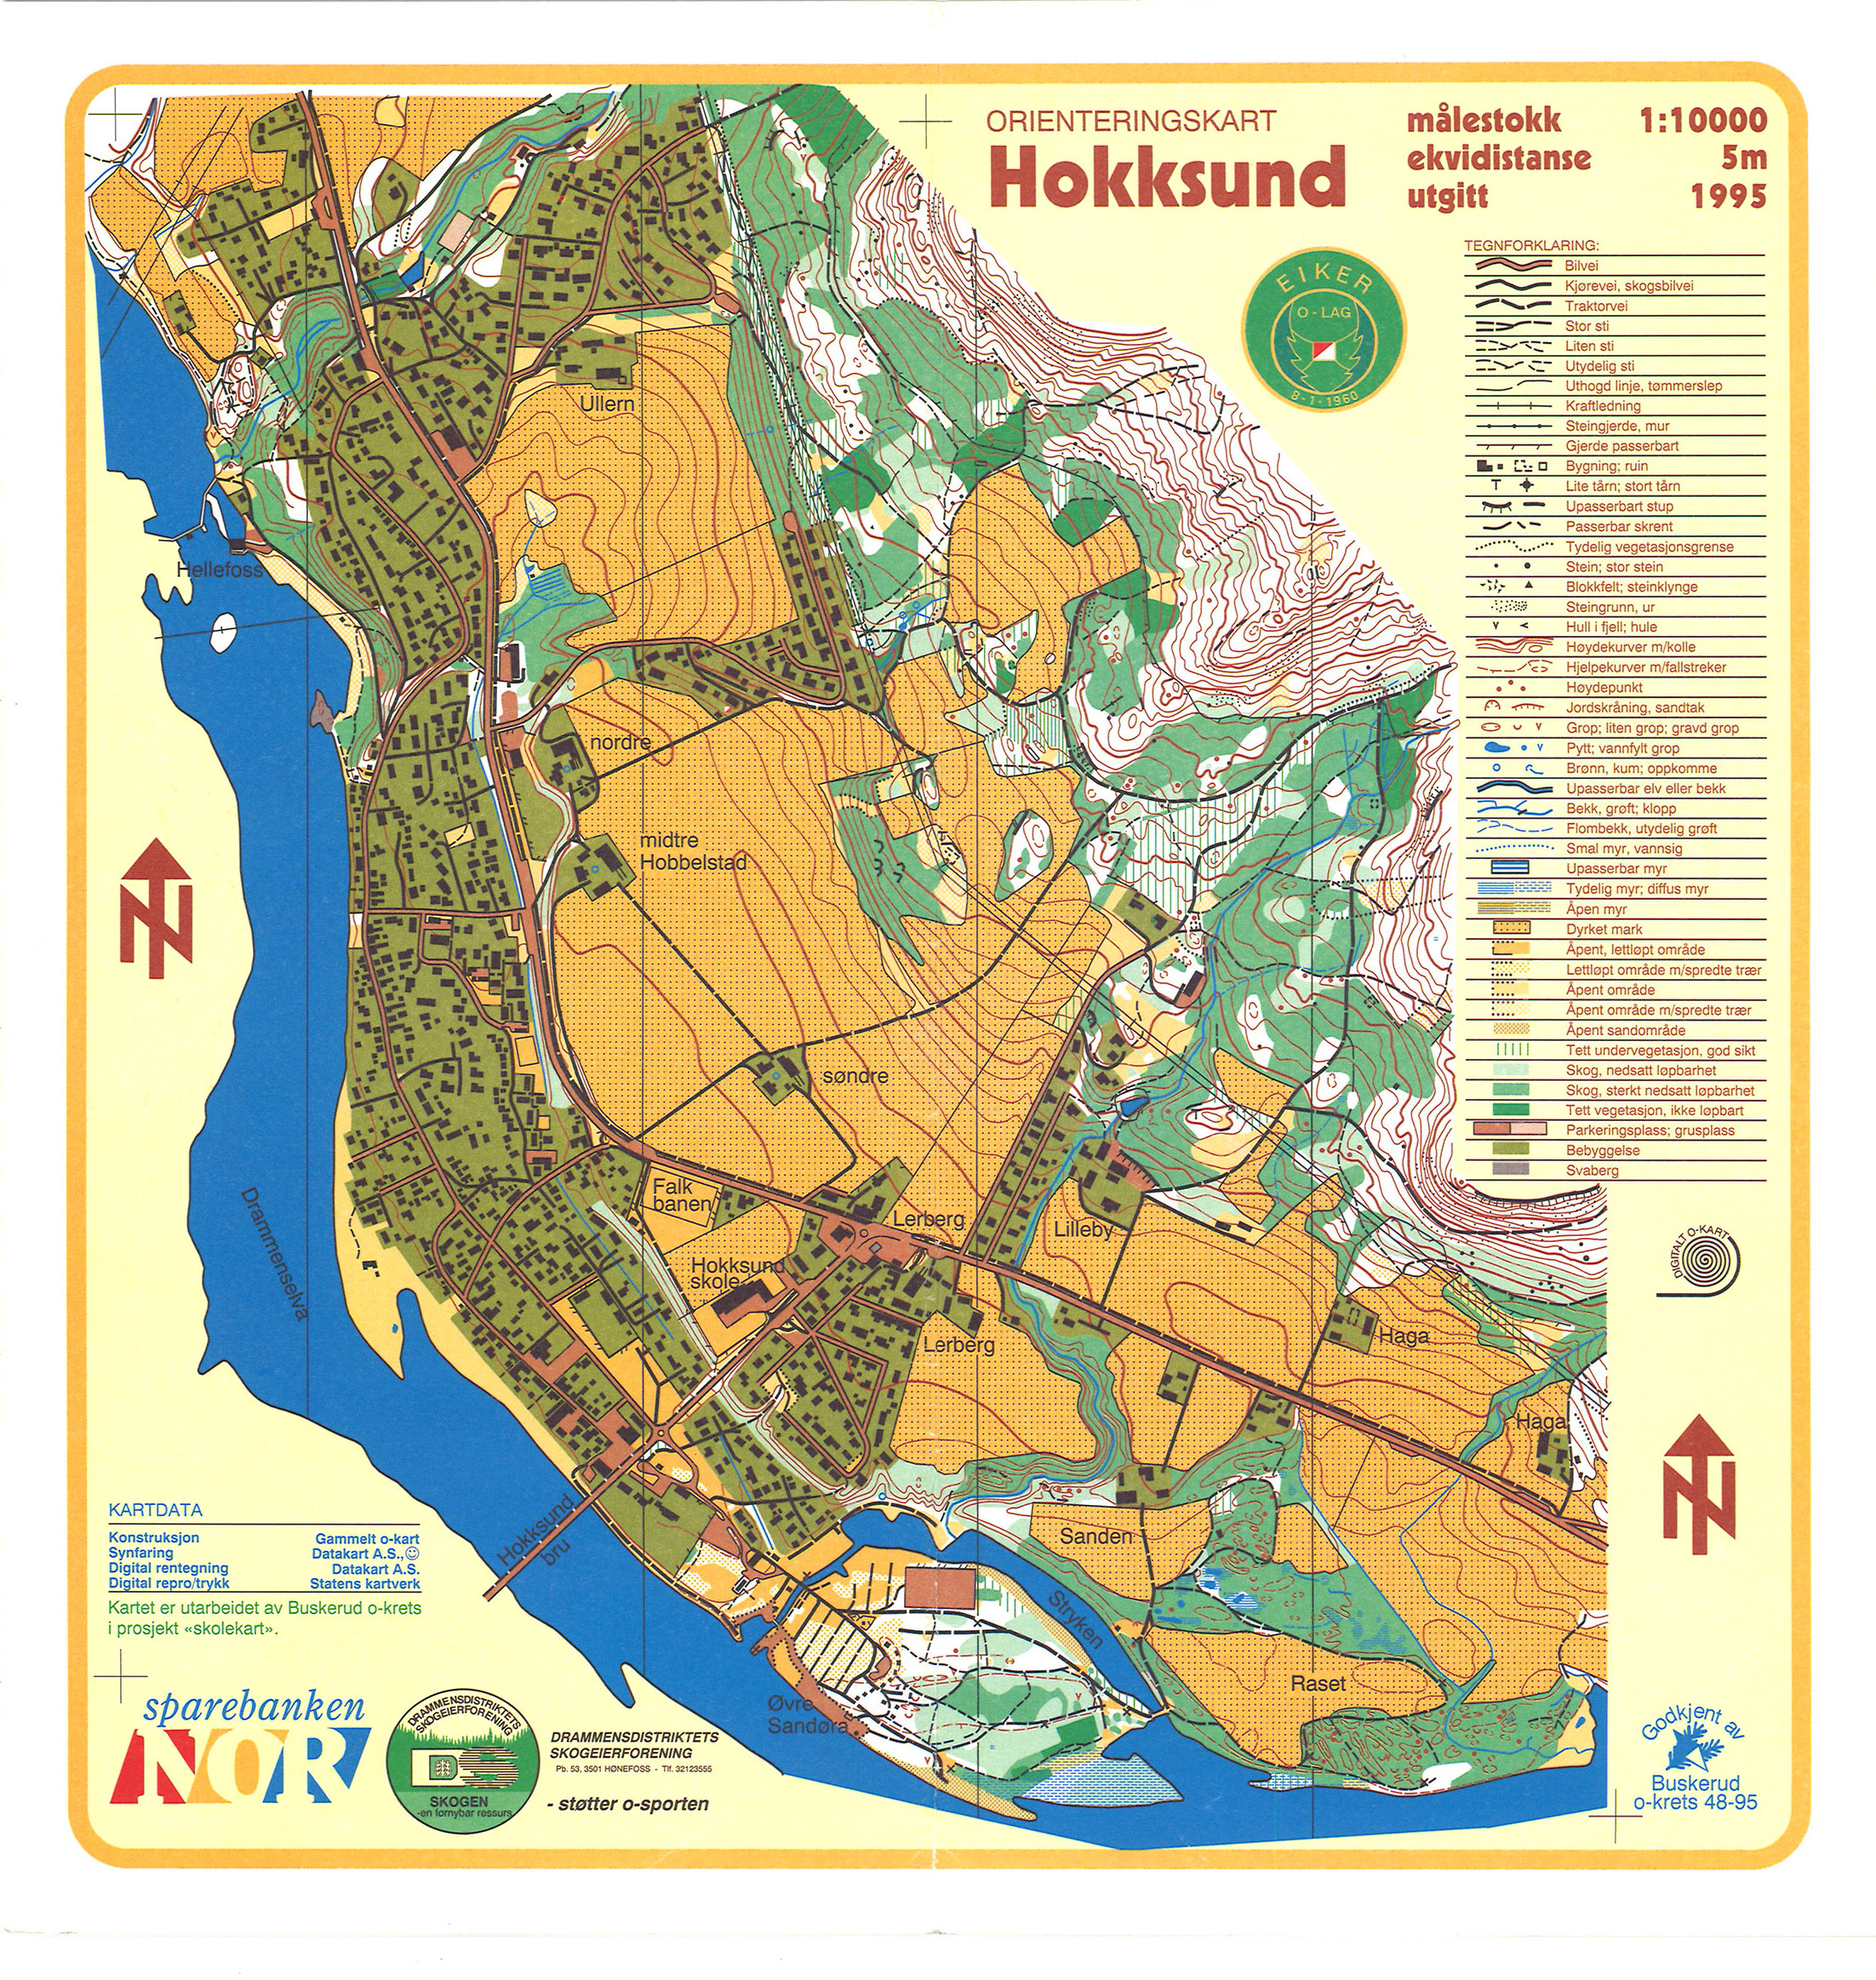 Hokkksund (01-05-1995)